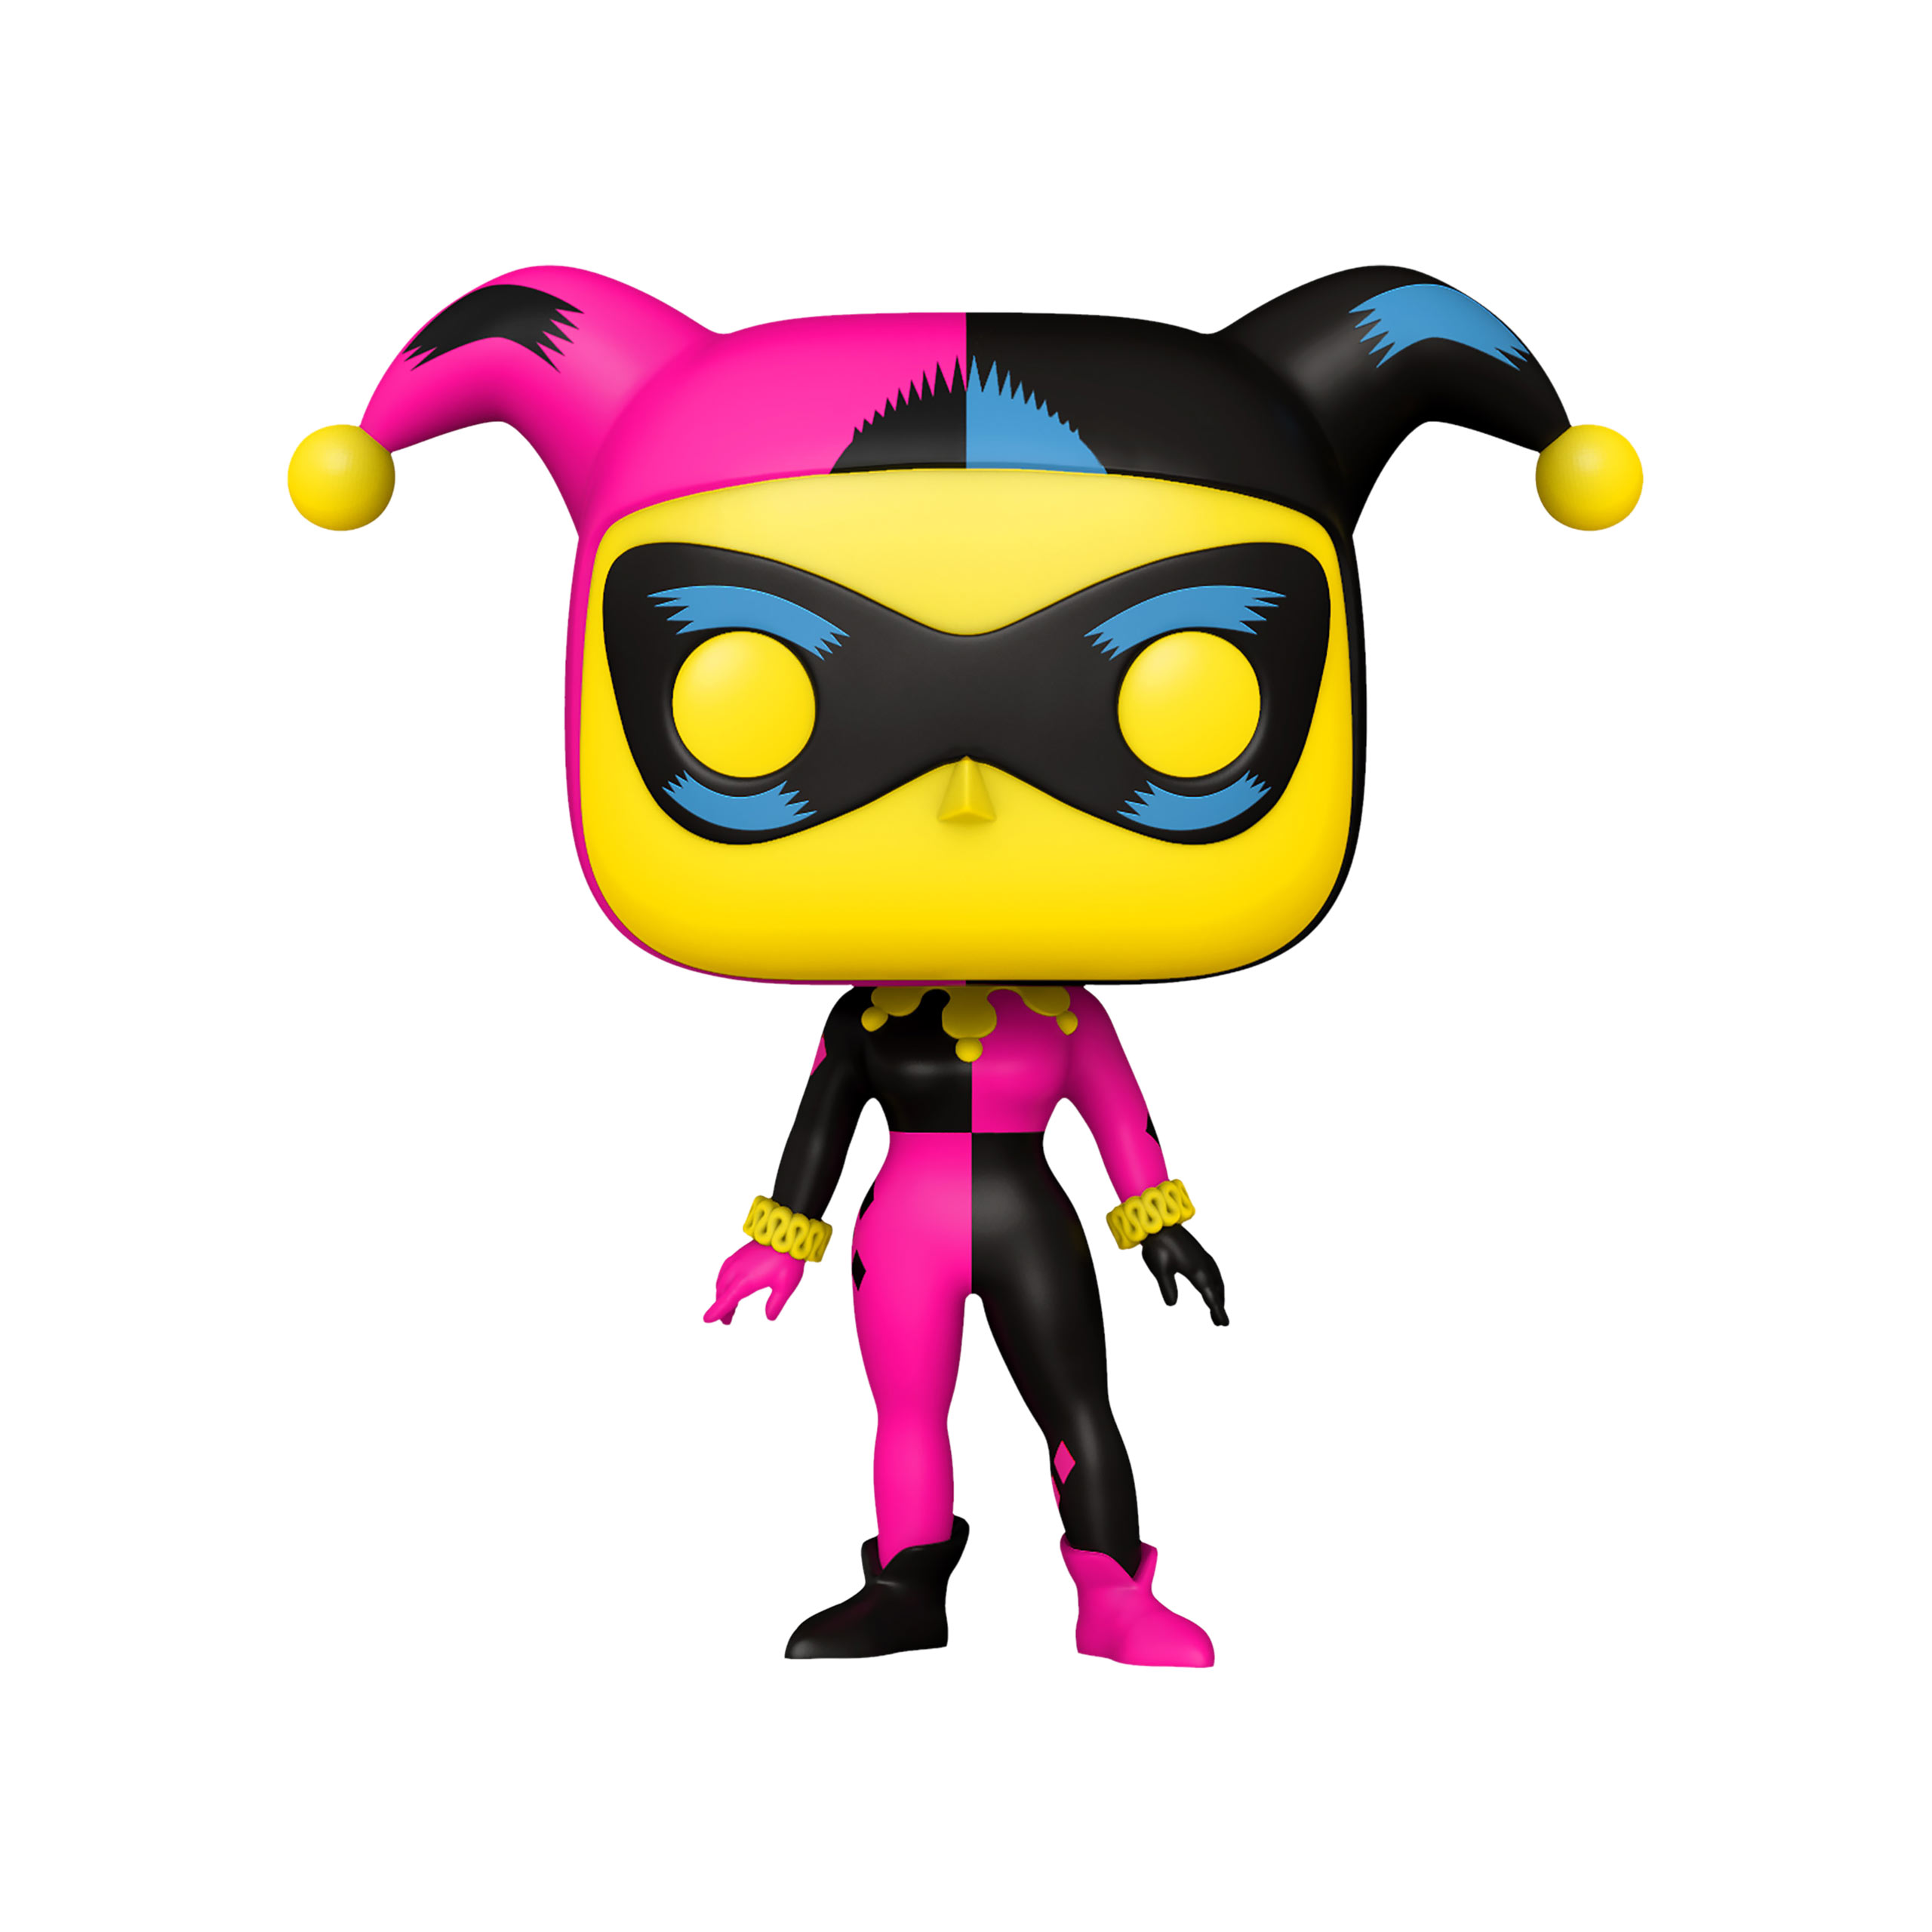 Batman - Harley Quinn Funko Pop Black Light Glow Figur